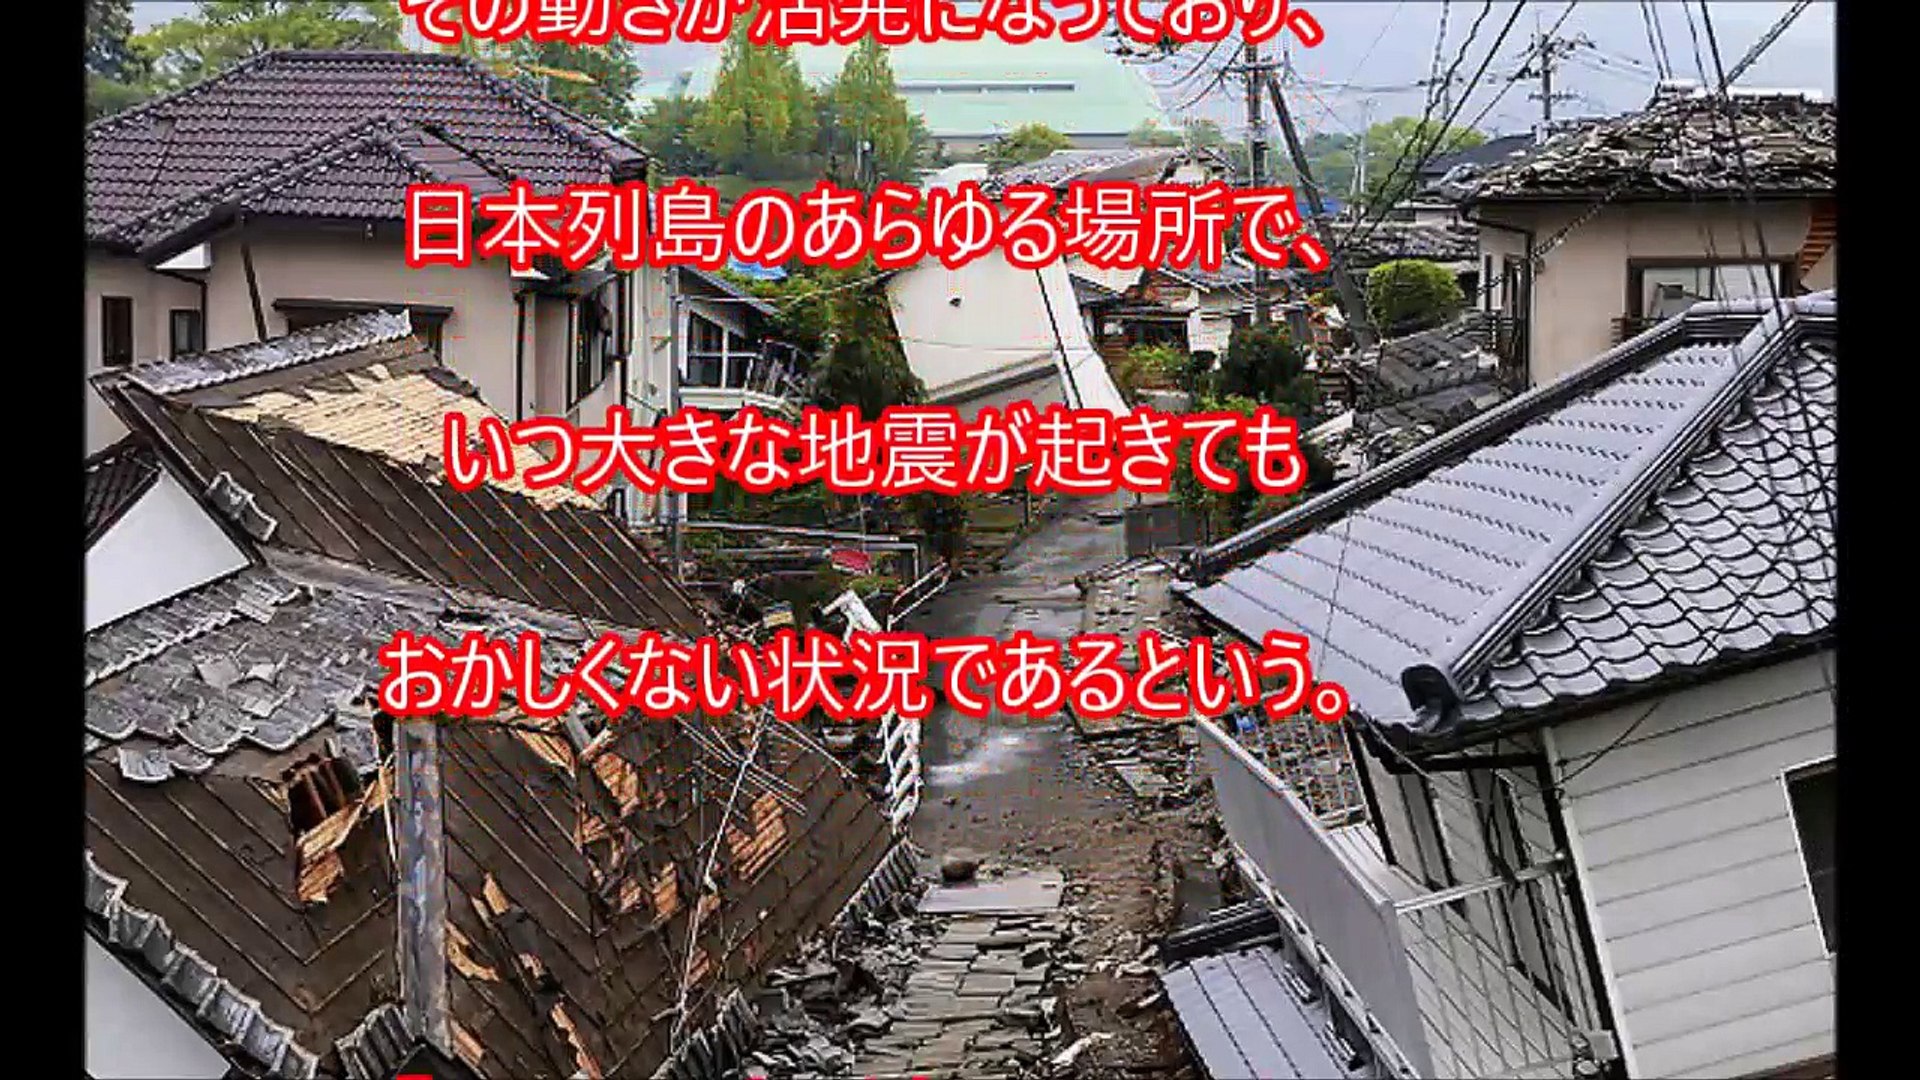 17年の大地震が起こりそうな場所はここだ 驚異の的中率を誇る村井教授の Mega地震予測 からの警告 Video Dailymotion